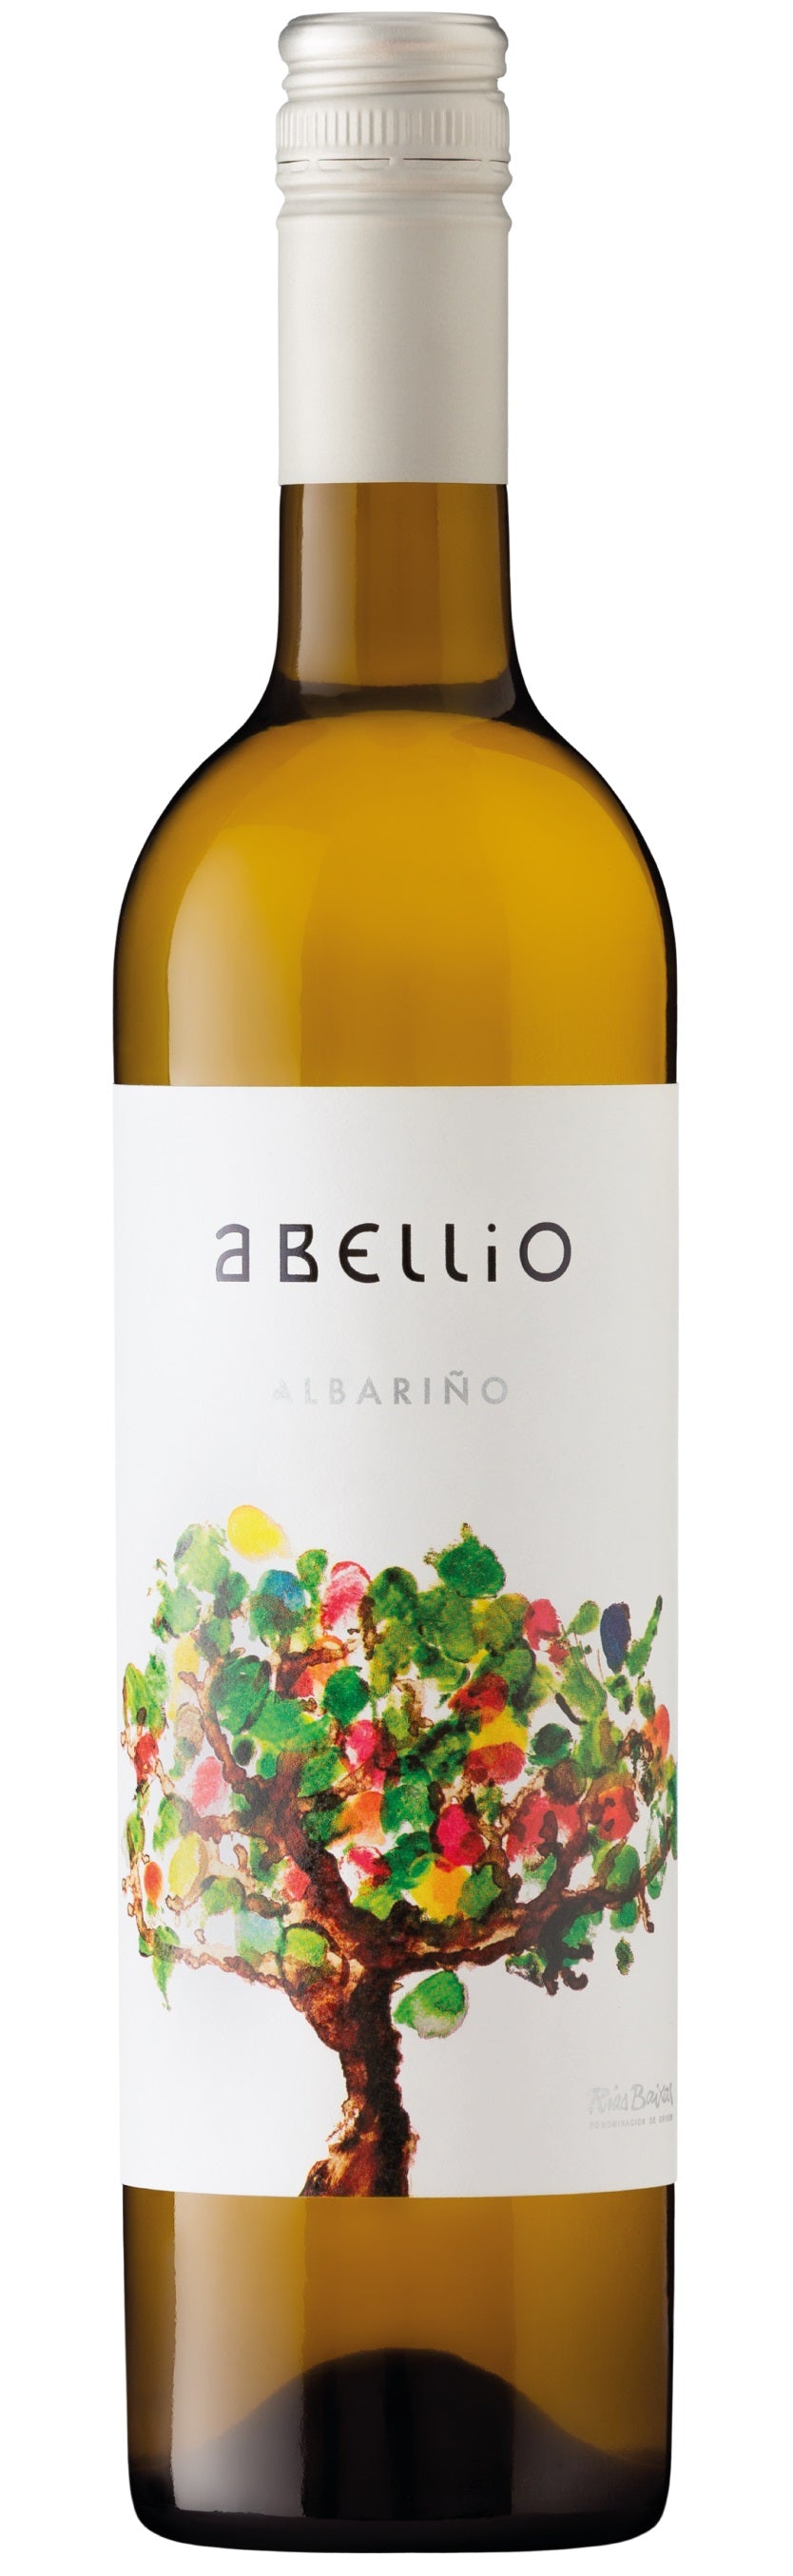 Abellio Albarino 2019